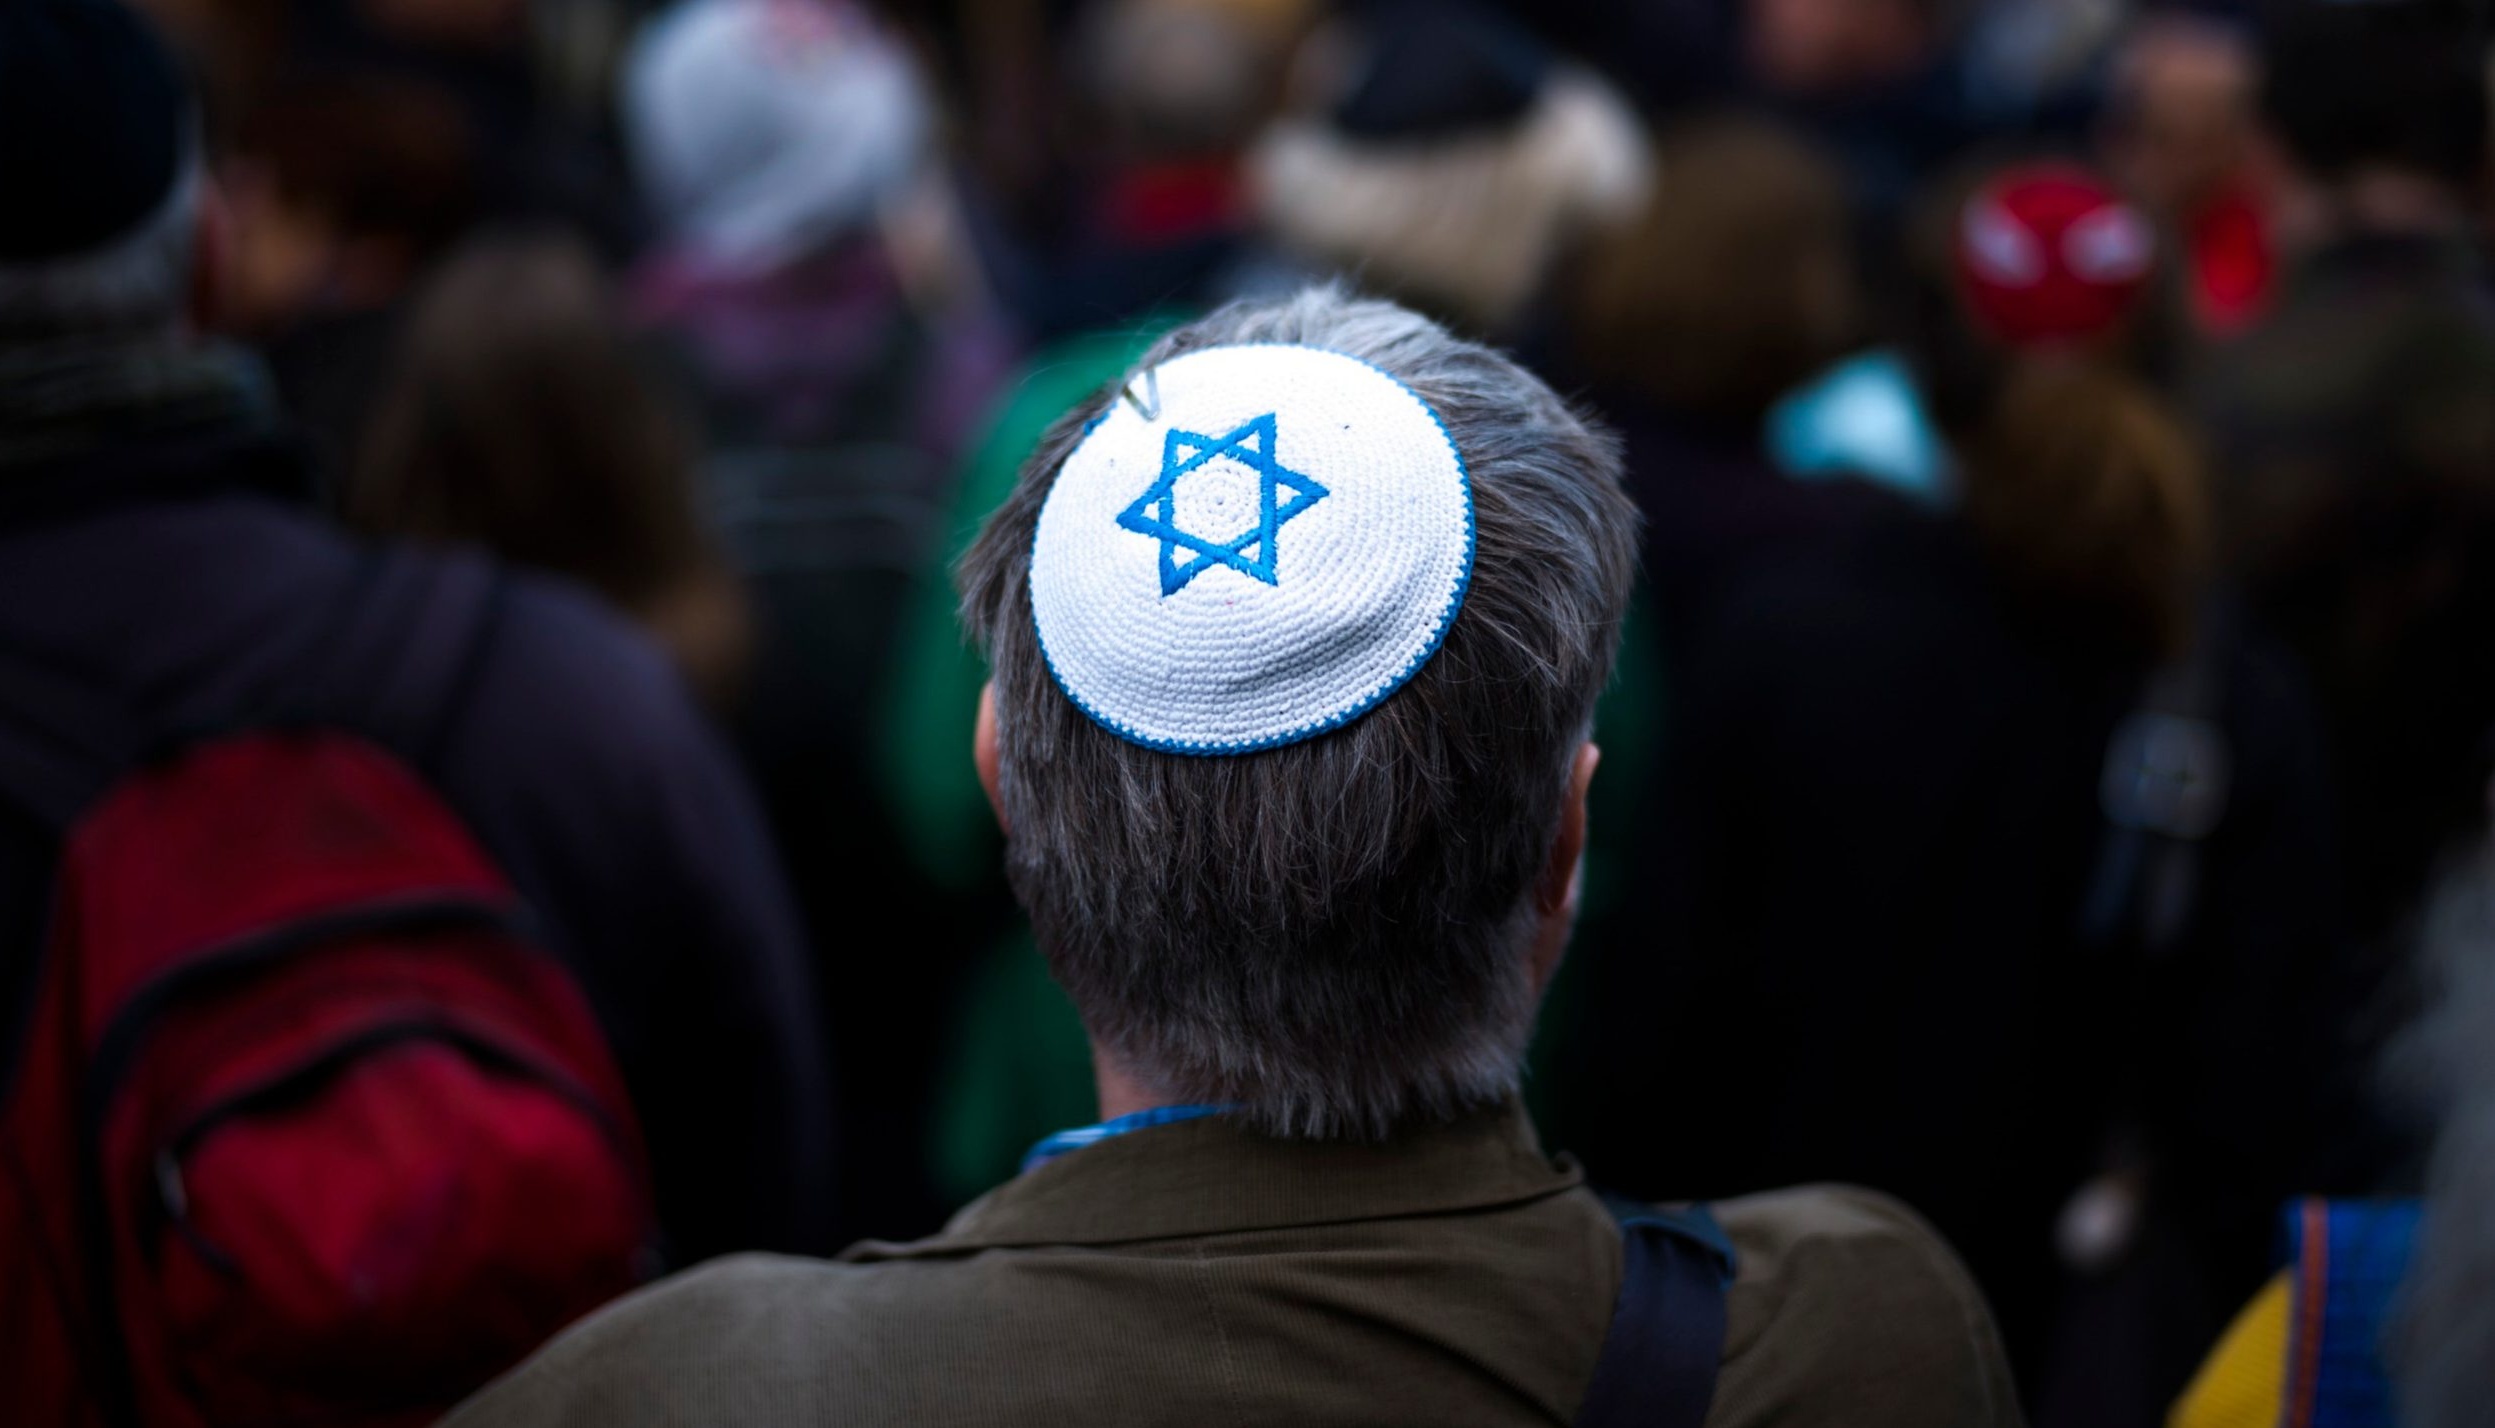 Včera byl spáchán antisemitsky motivovaný útok v Hamburku